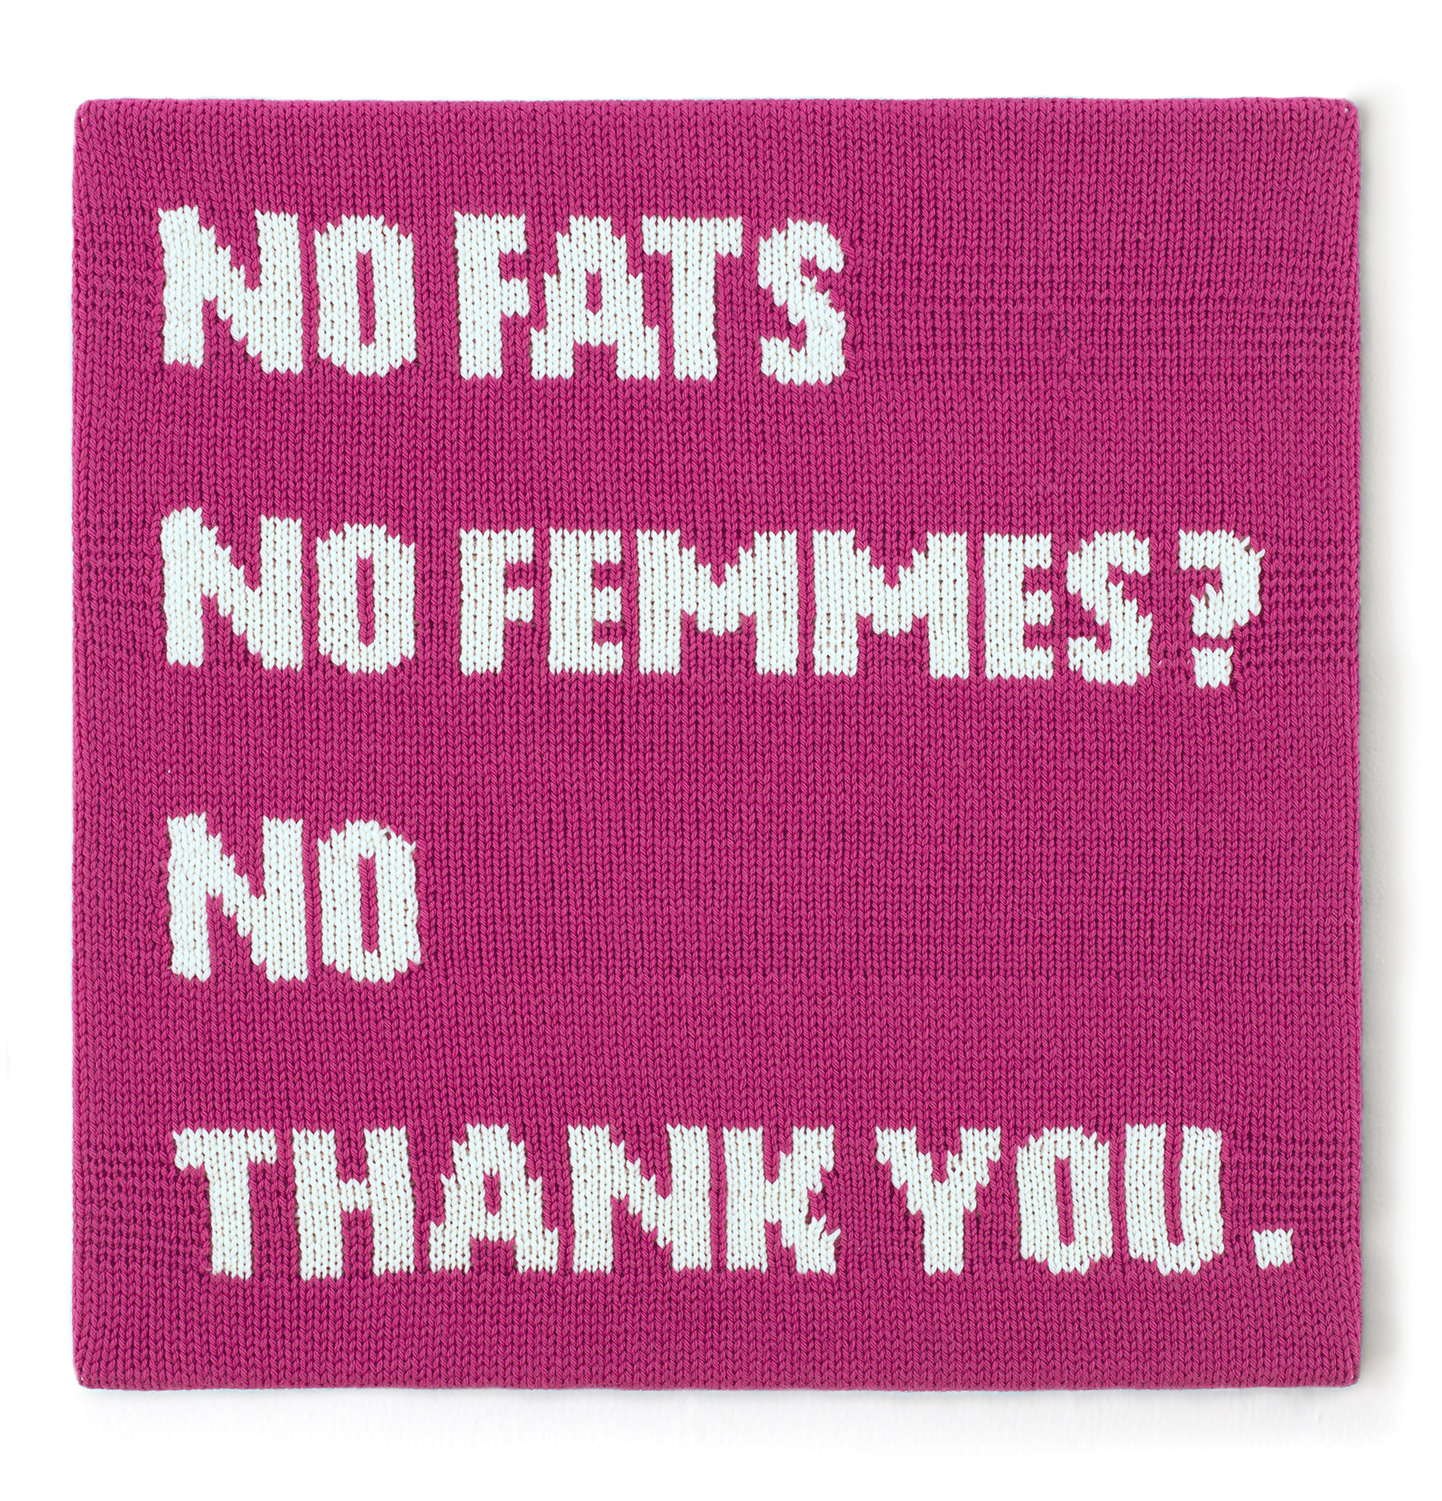 NO FATS NO FEMMES? NO THANK YOU.